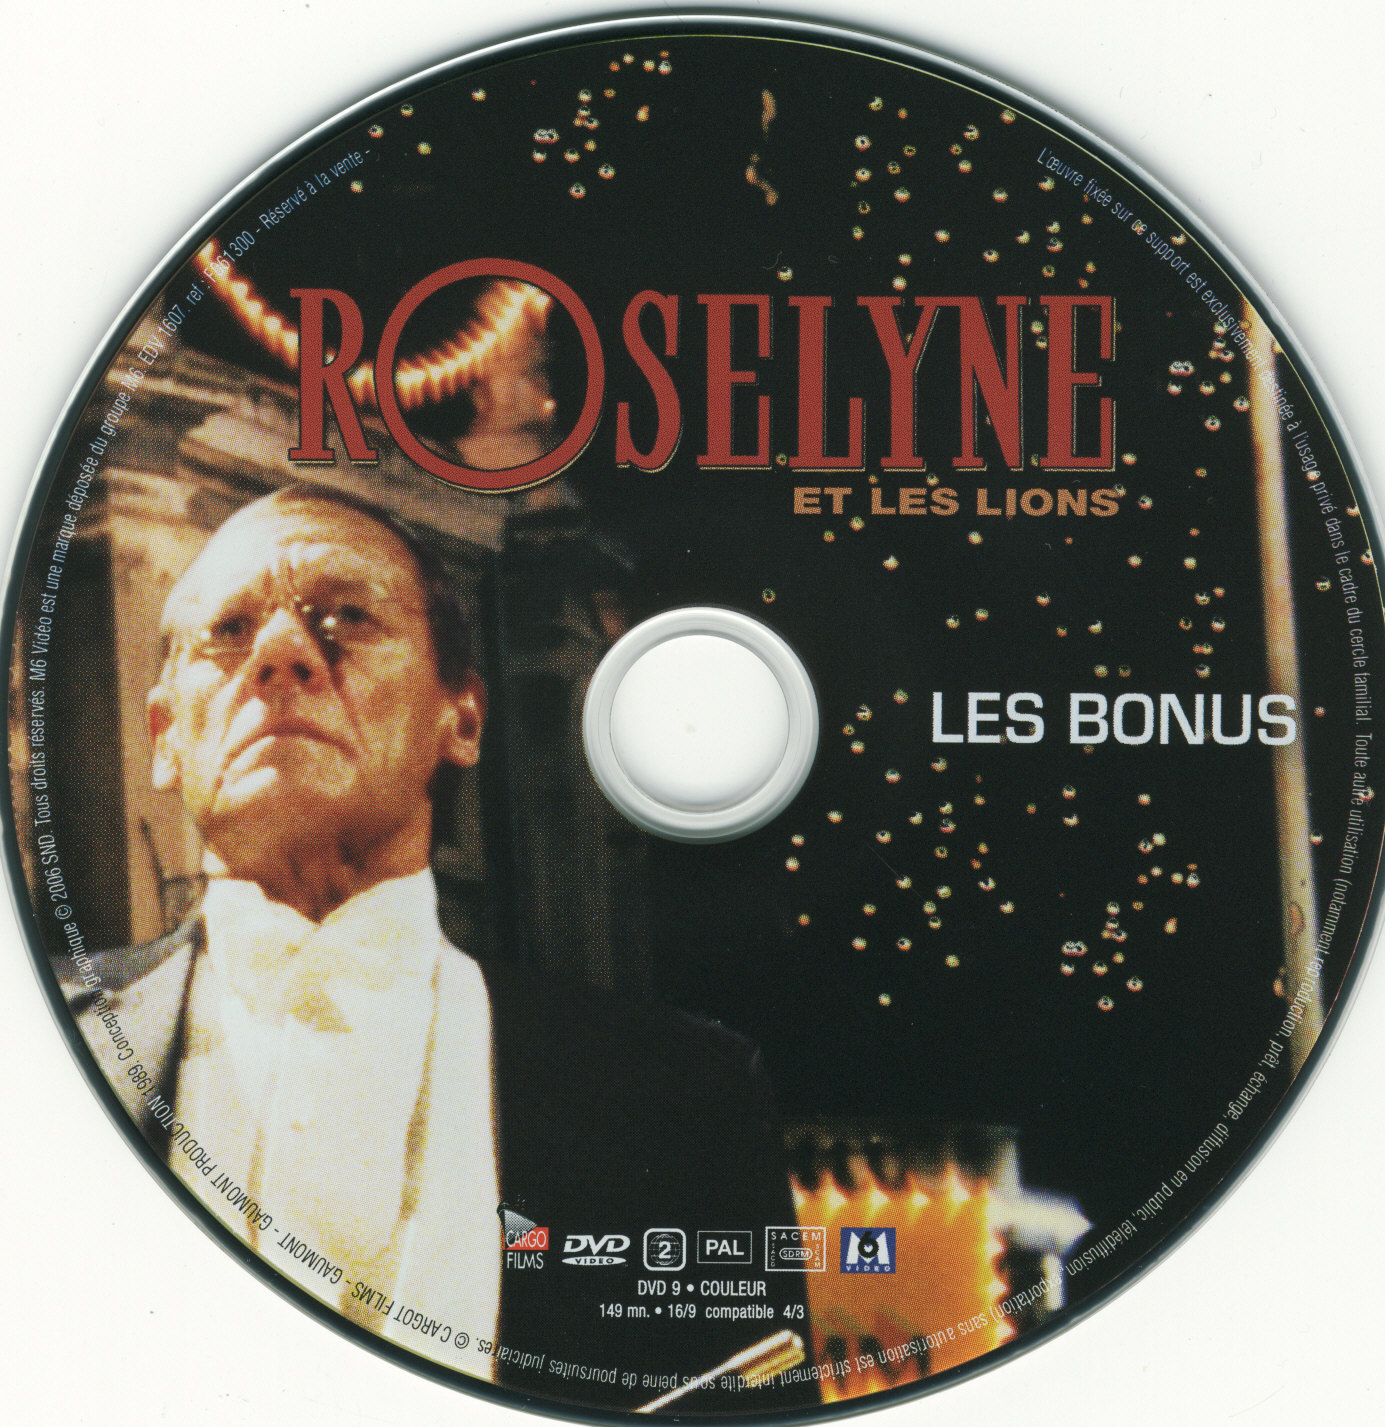 Roselyne et les lions DISC 2